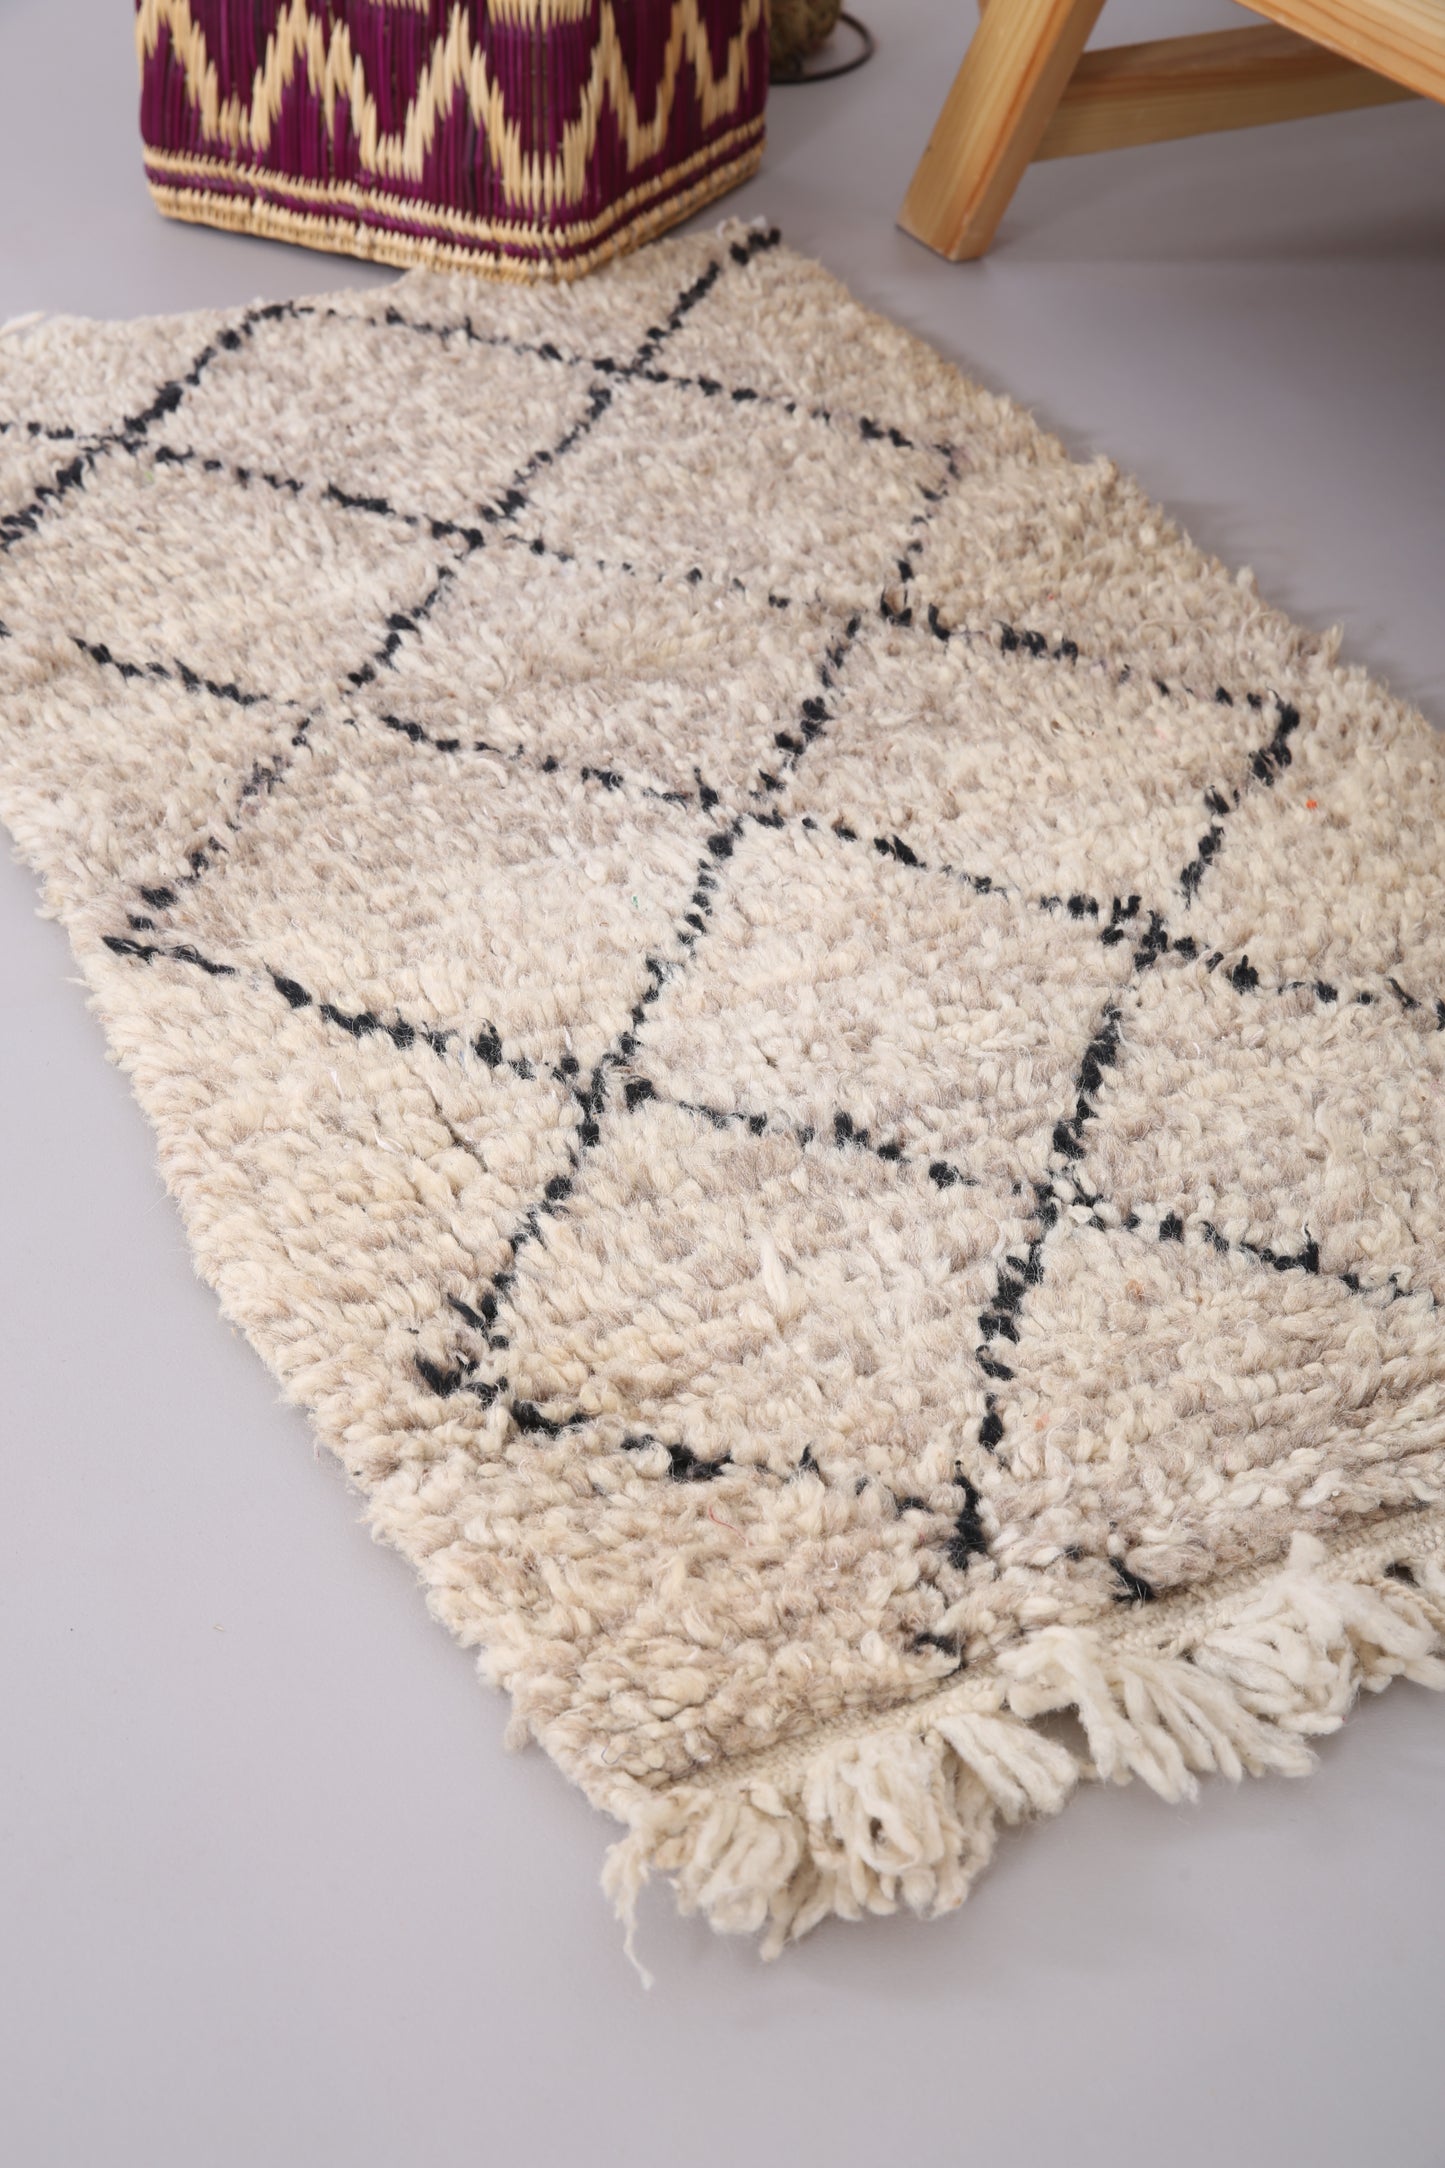 Kleiner Beni Ourain Teppich 2,2 FT x 4 FT - kleiner marokkanischer Teppich - handgemachter Berberteppich